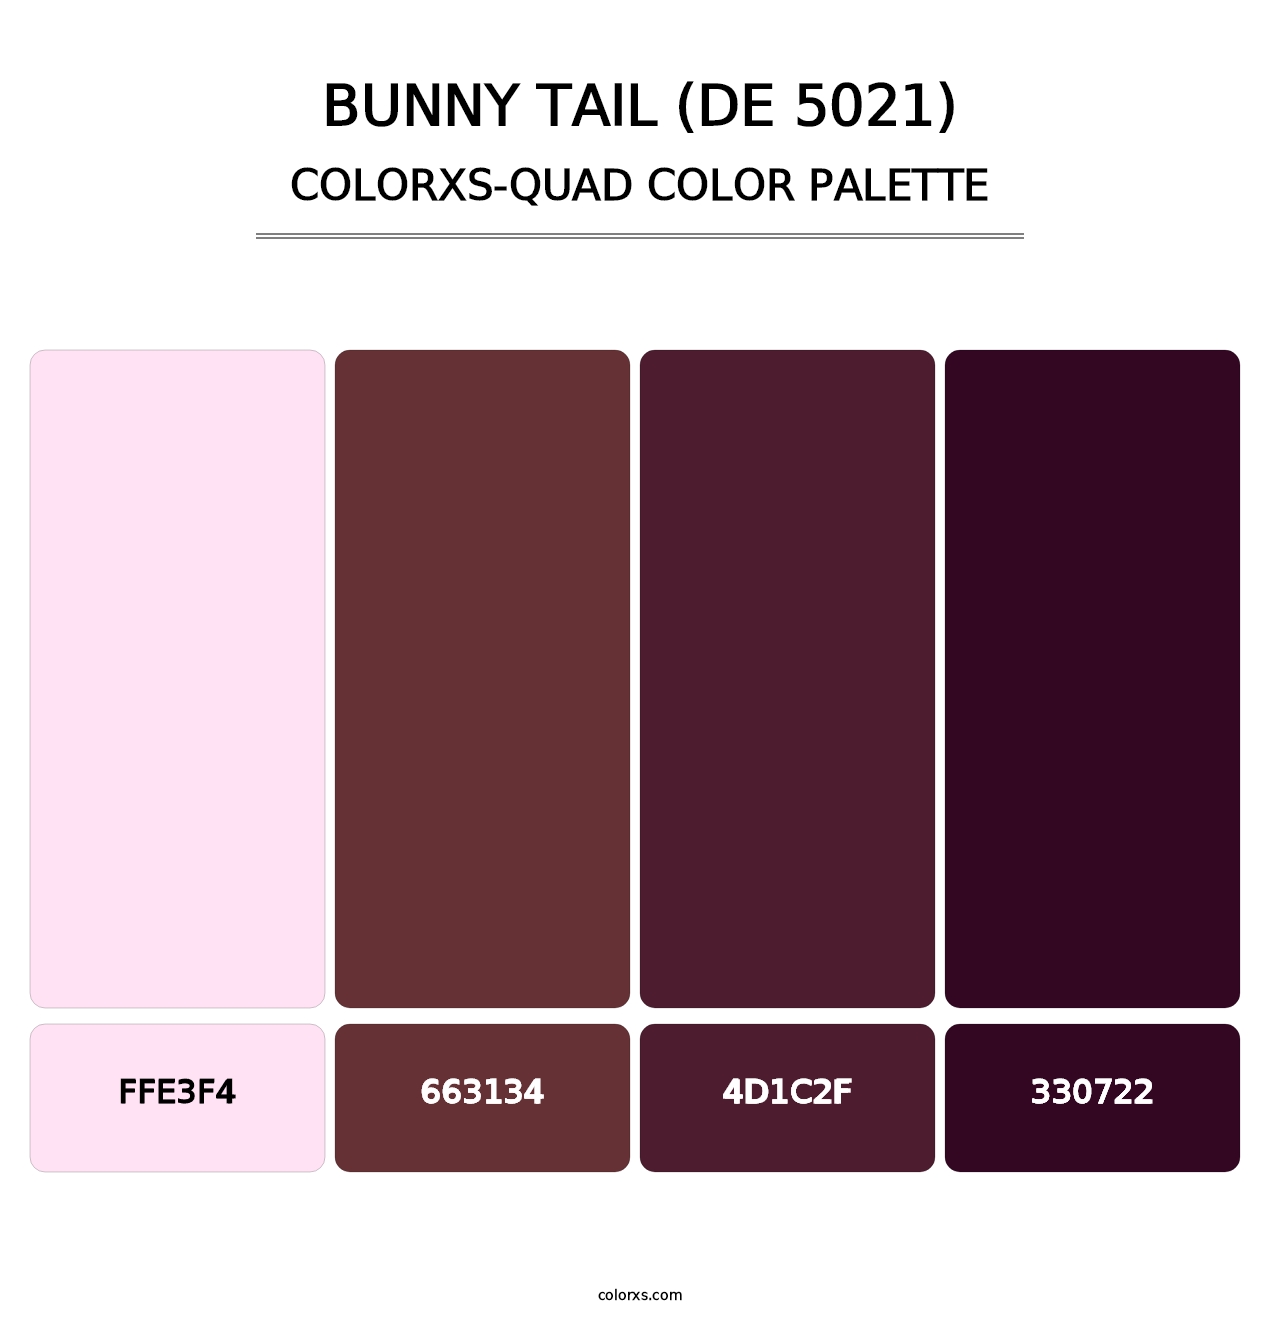 Bunny Tail (DE 5021) - Colorxs Quad Palette